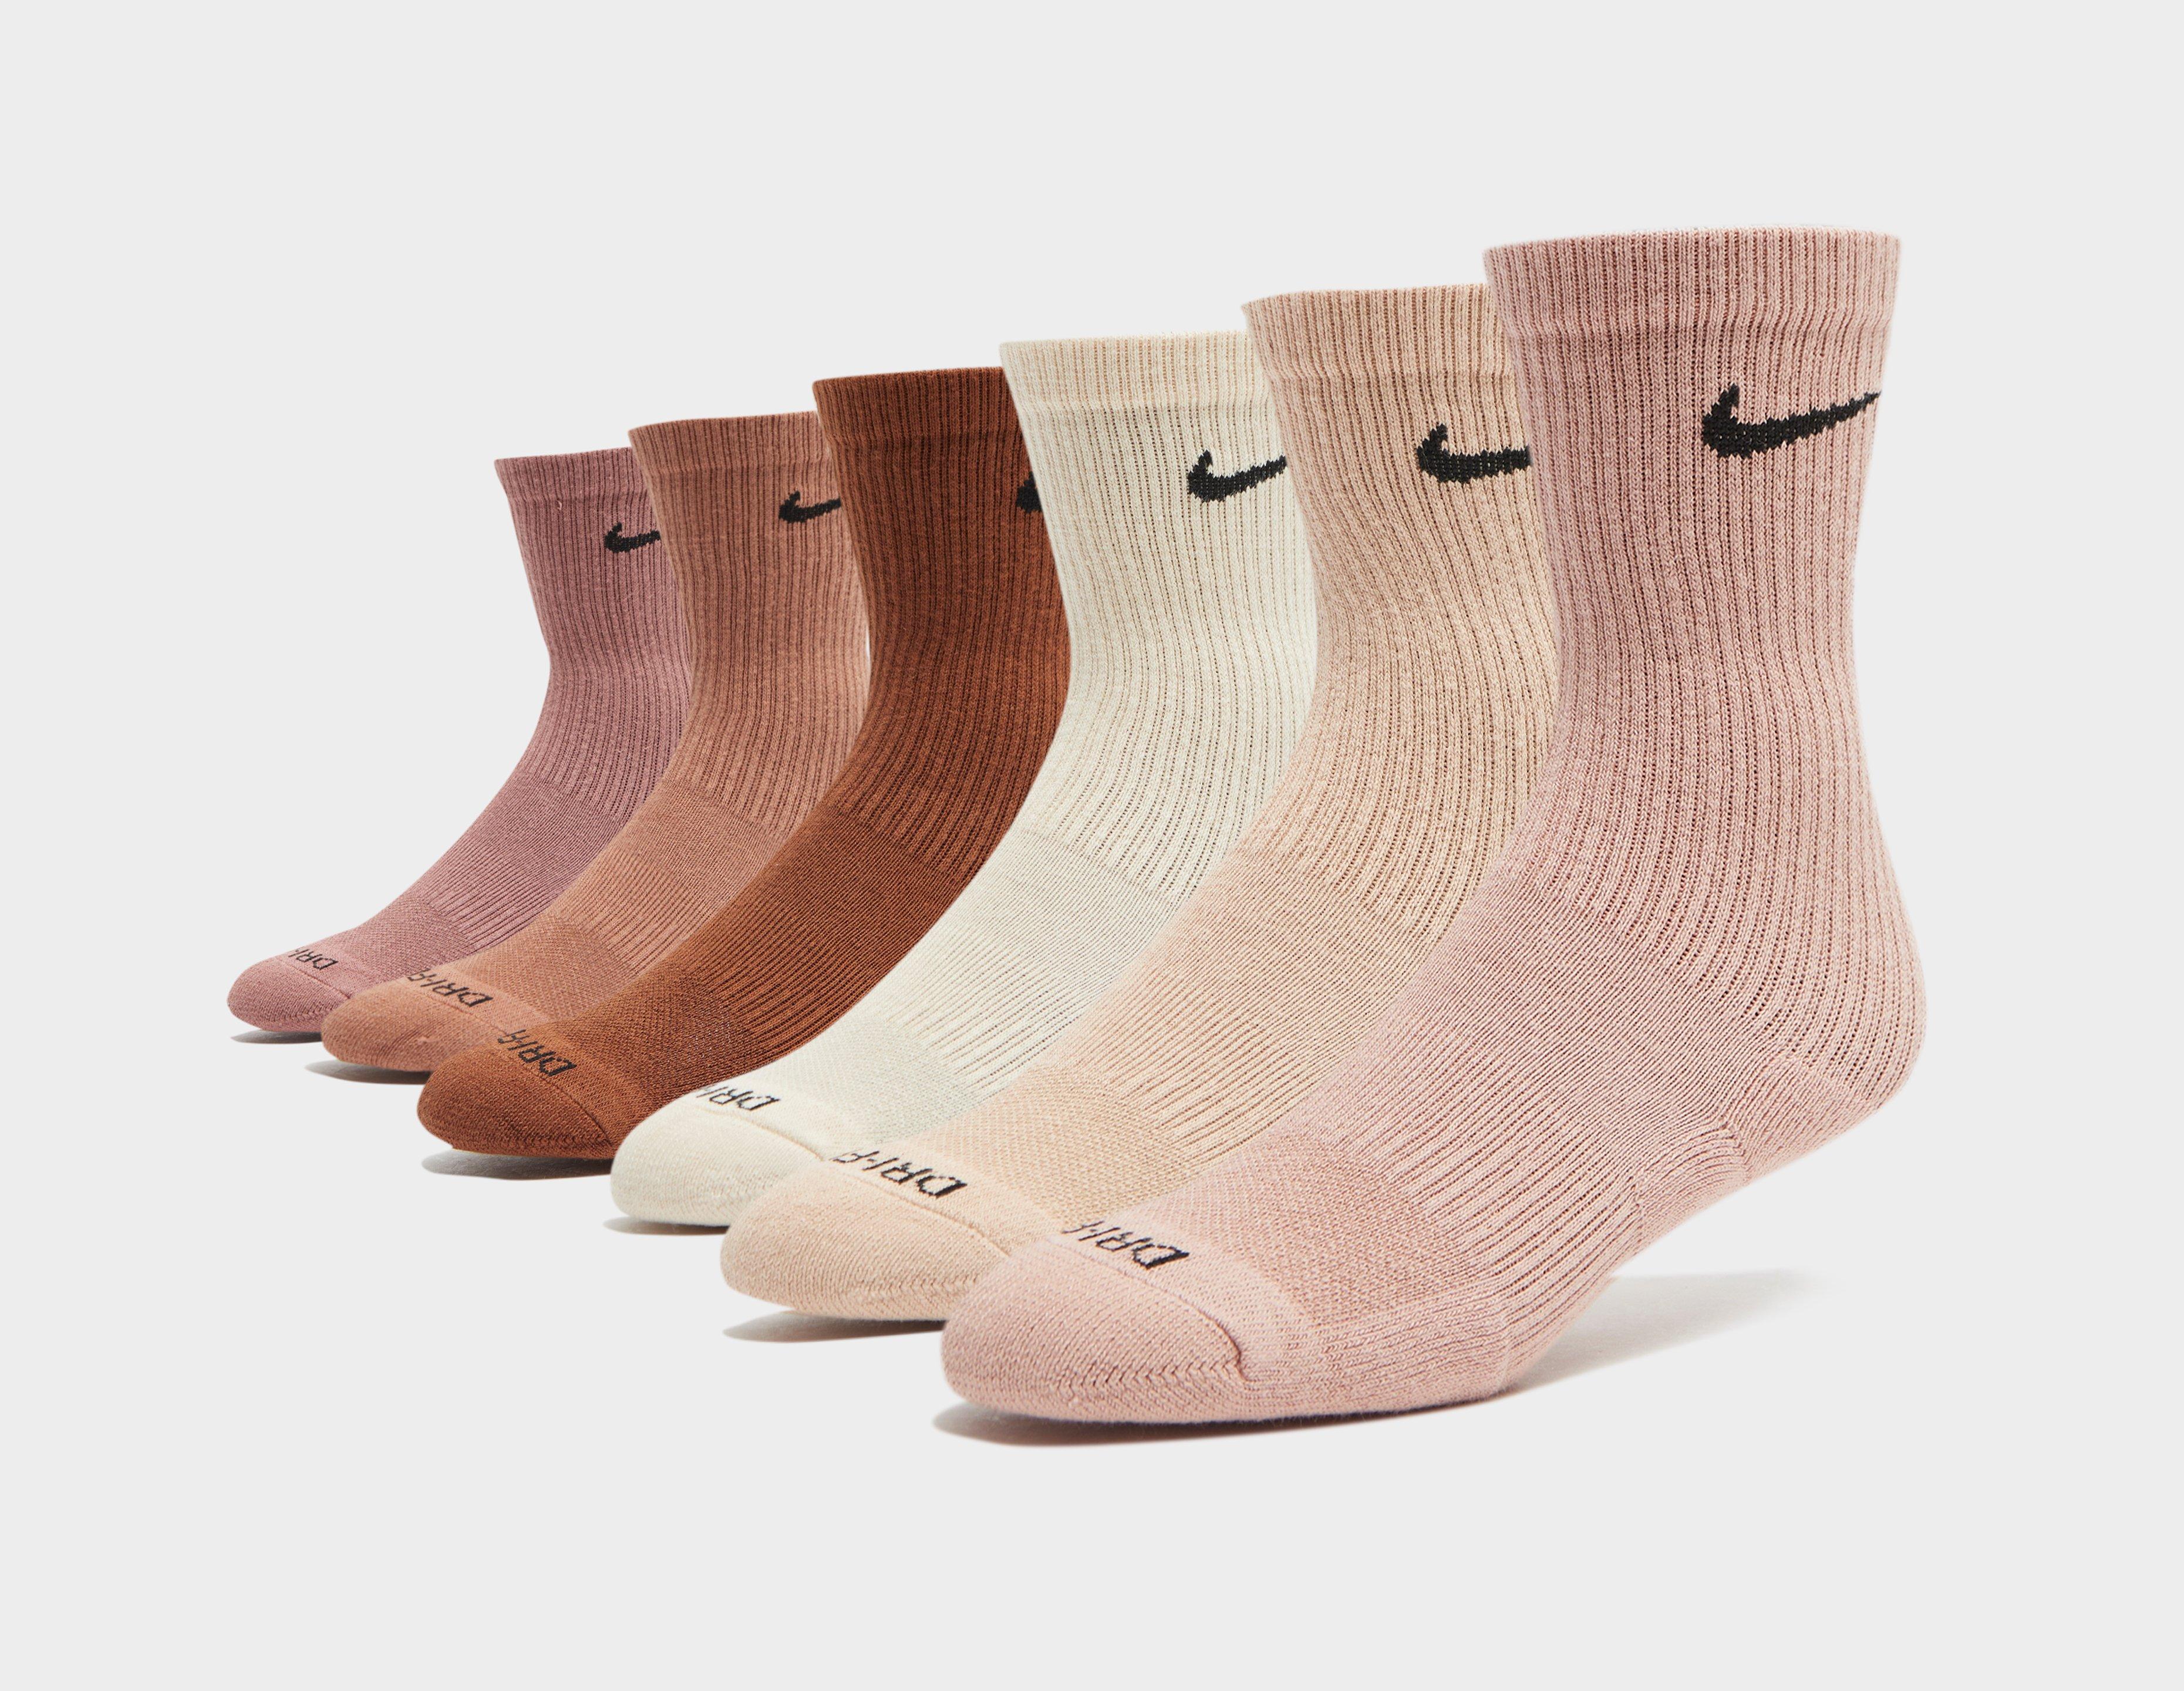 Nike Lot de 6 paires de Chaussettes de Training Multicolore- Size? France